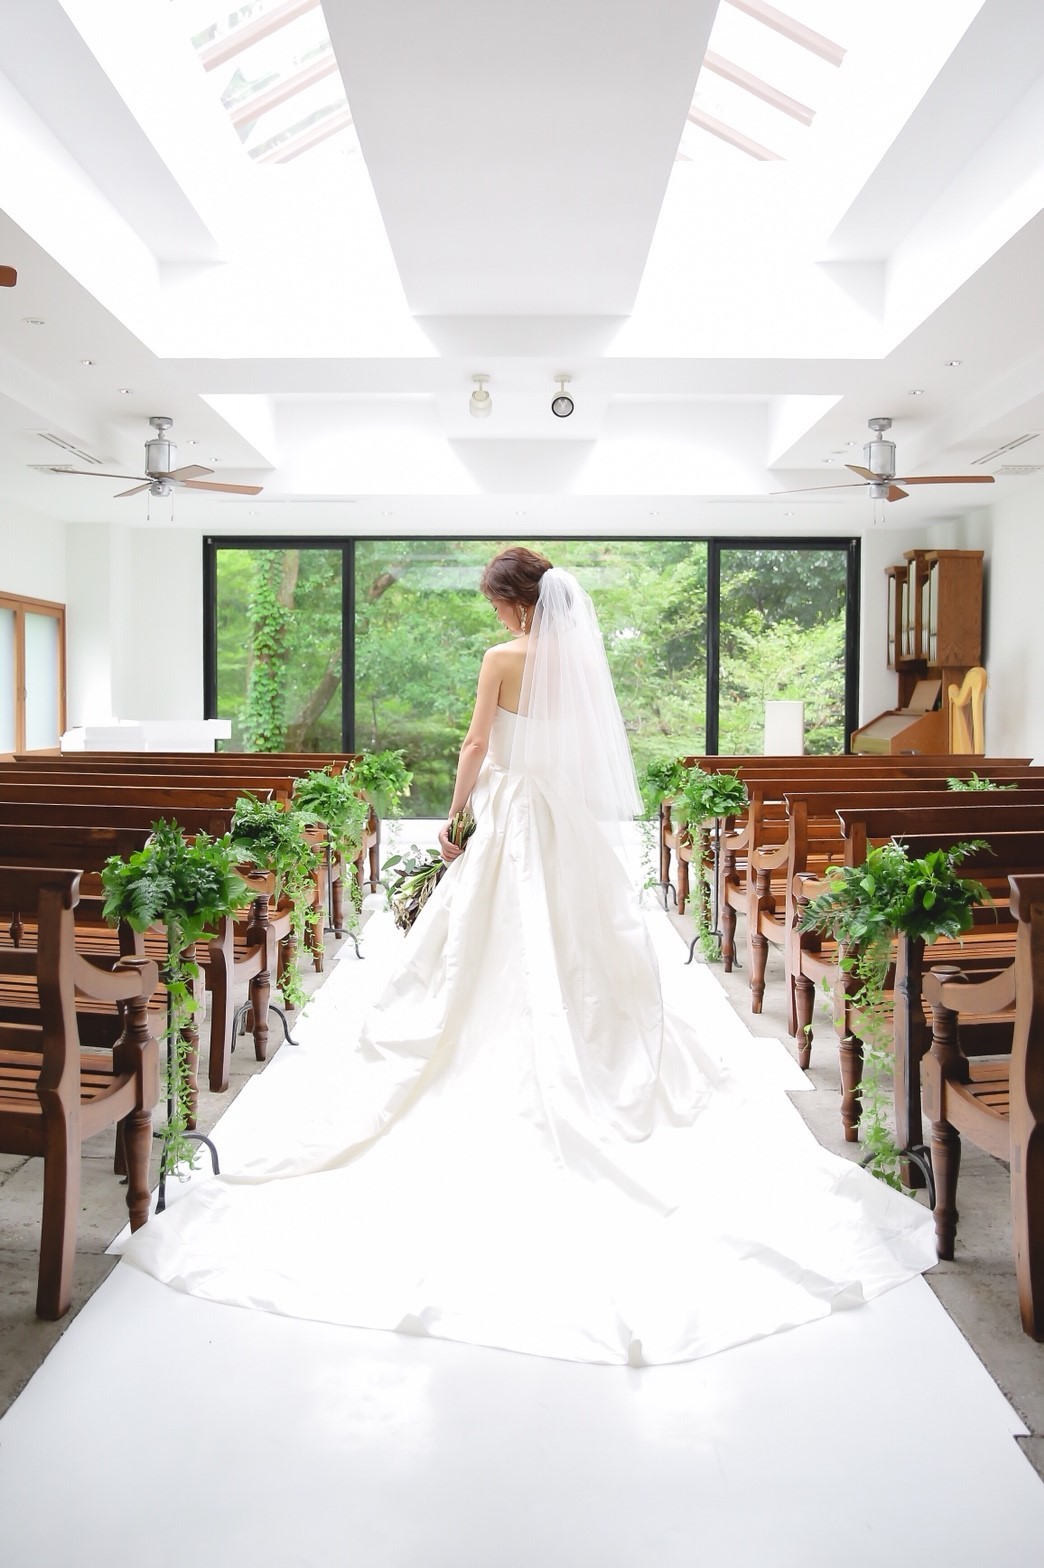 ザ ナンザンハウス The Nanzan House で結婚式 ウェディングニュース結婚式場検索